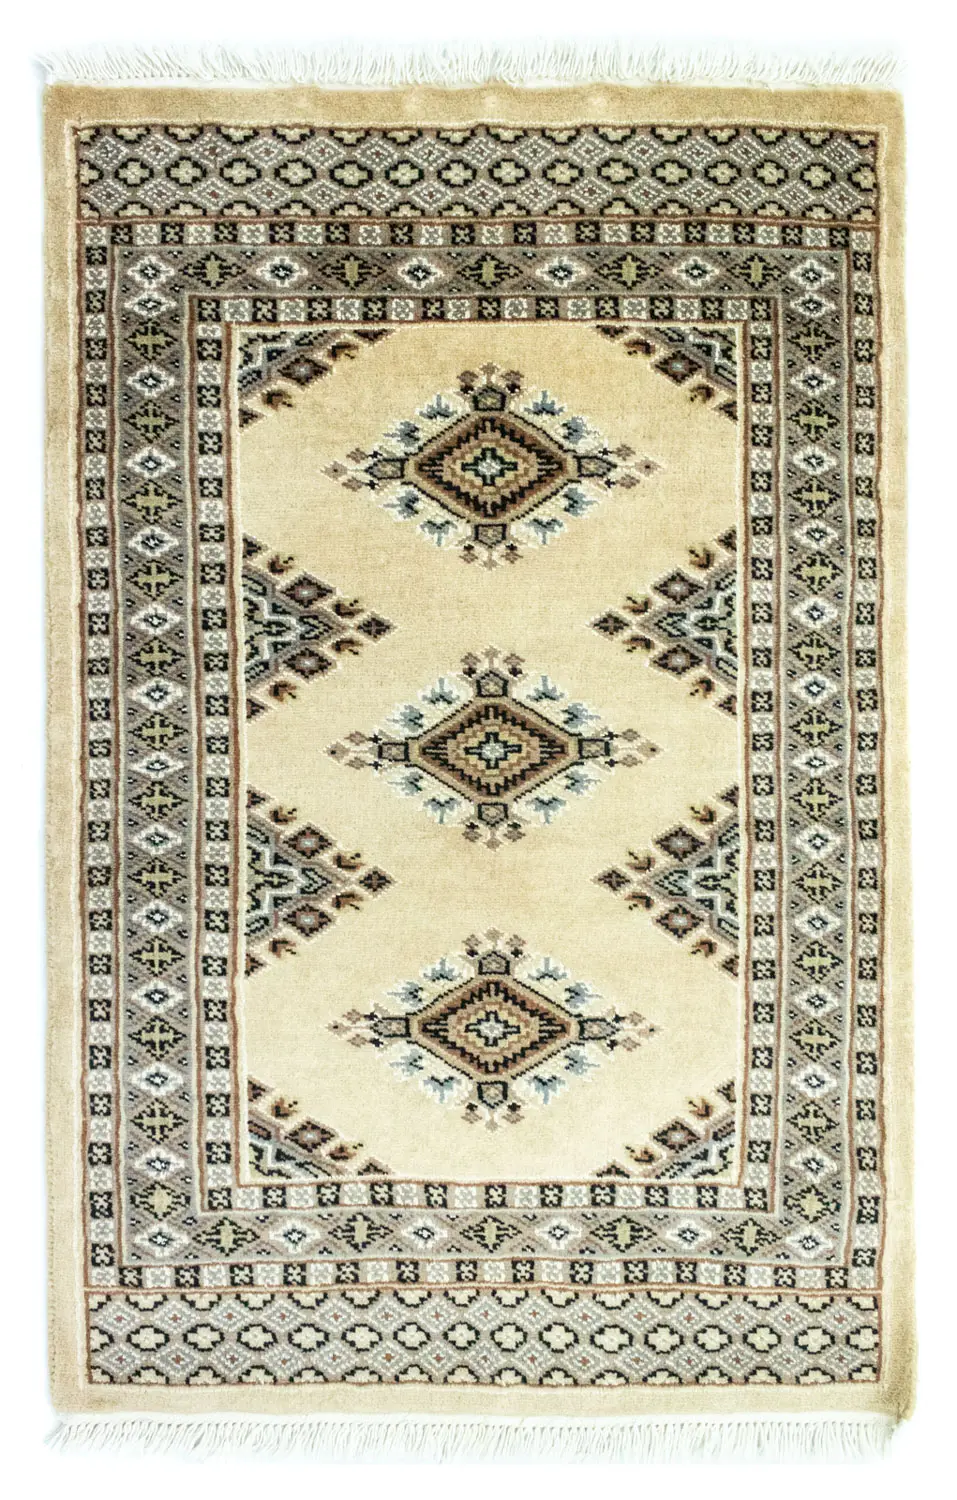 Pakistan Teppich - 95 x 64 cm - beige